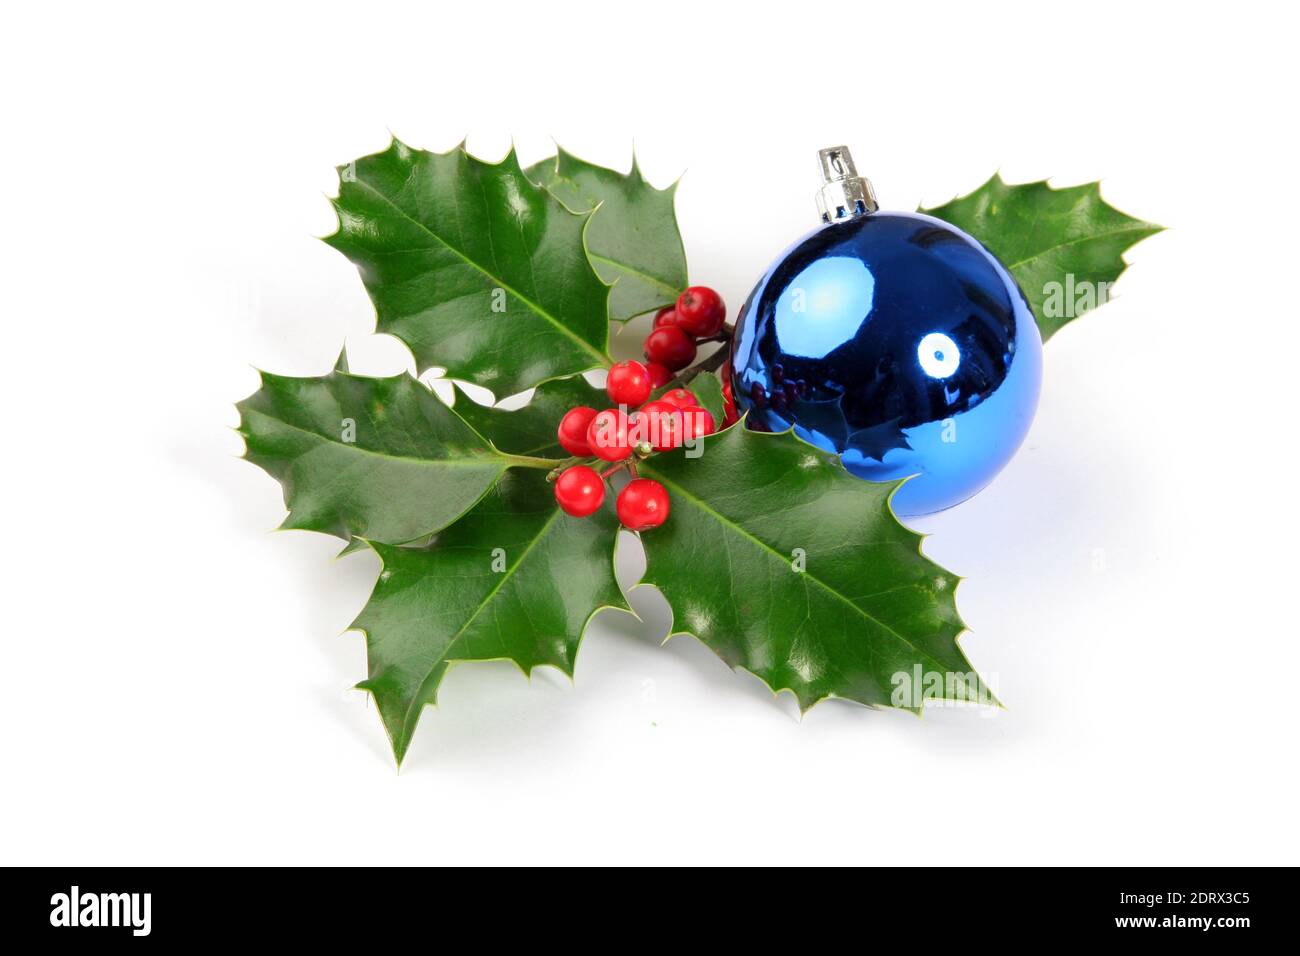 Natale o Capodanno decorazione con agrifoglio ramo e palla blu lucido. Foto isolata su sfondo bianco Foto Stock